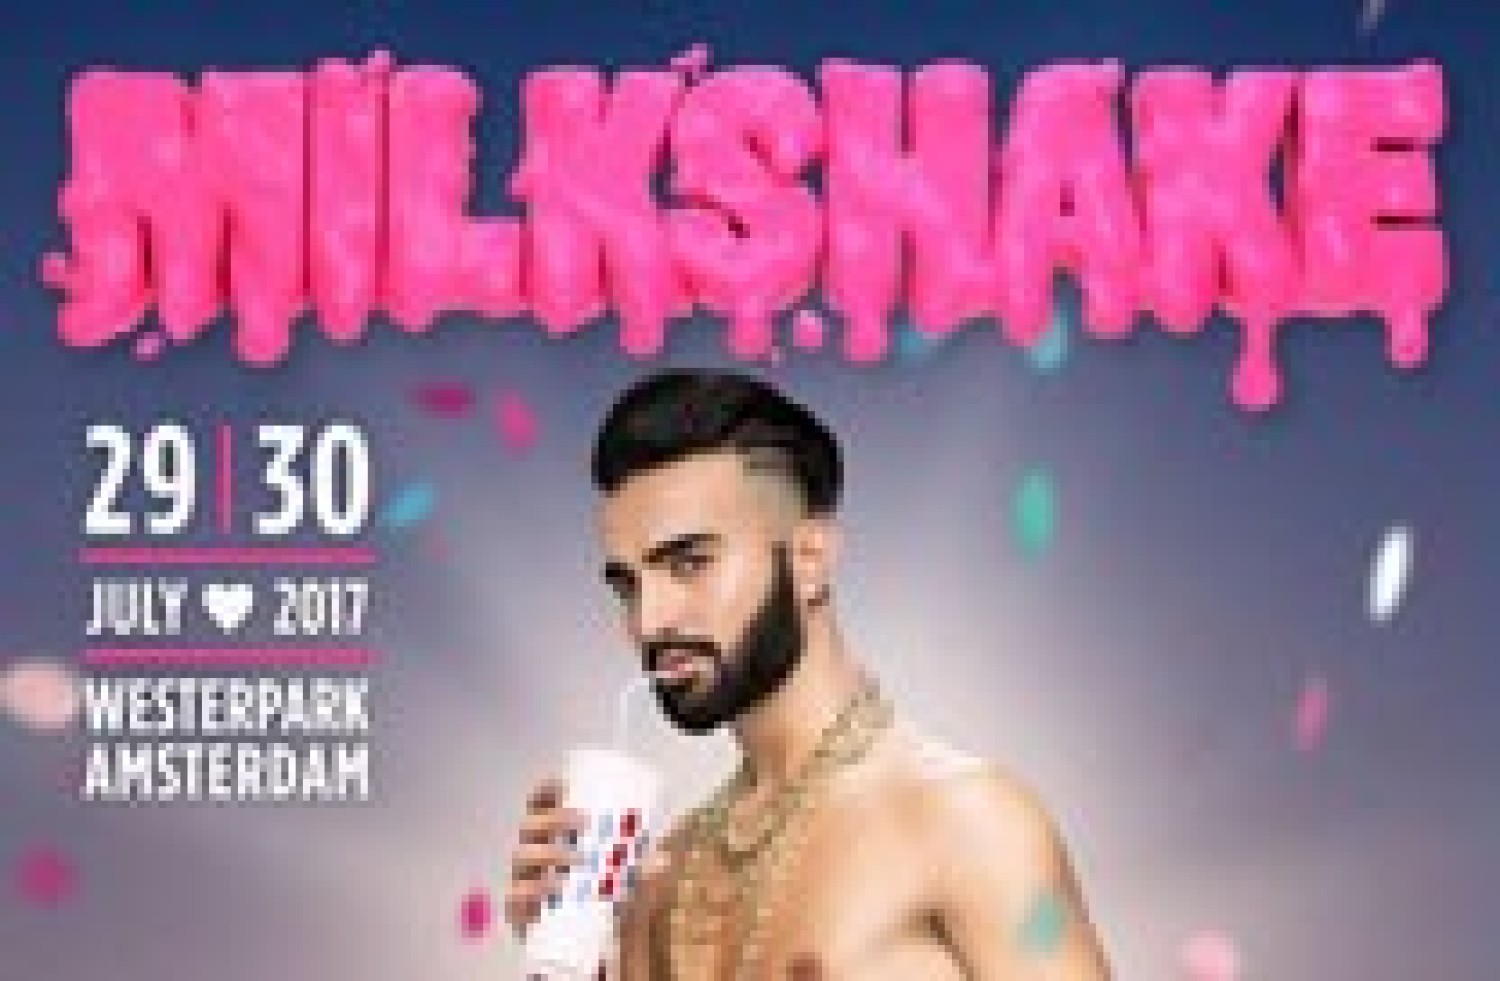 Party report: Milkshake Festival, Amsterdam (29-07-2017)